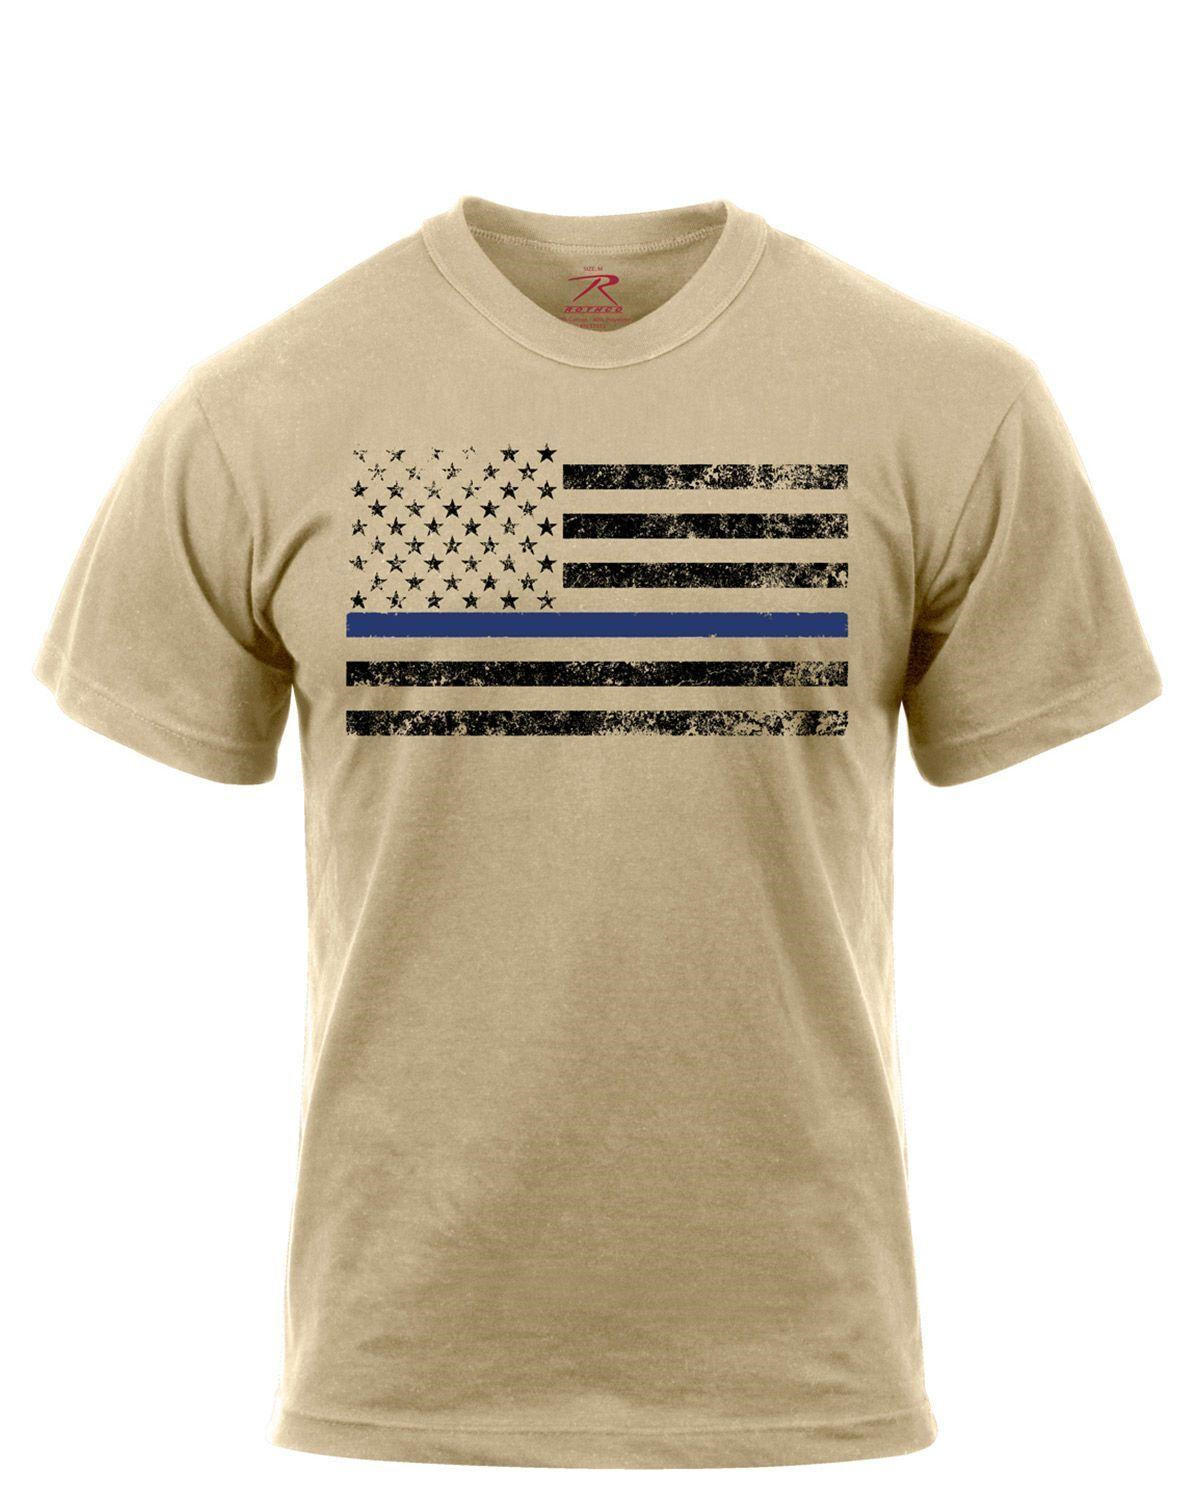 5: Rothco T-Shirt - Thin Blue Line-Flag (Desert Sand m. Sort Flag, L)